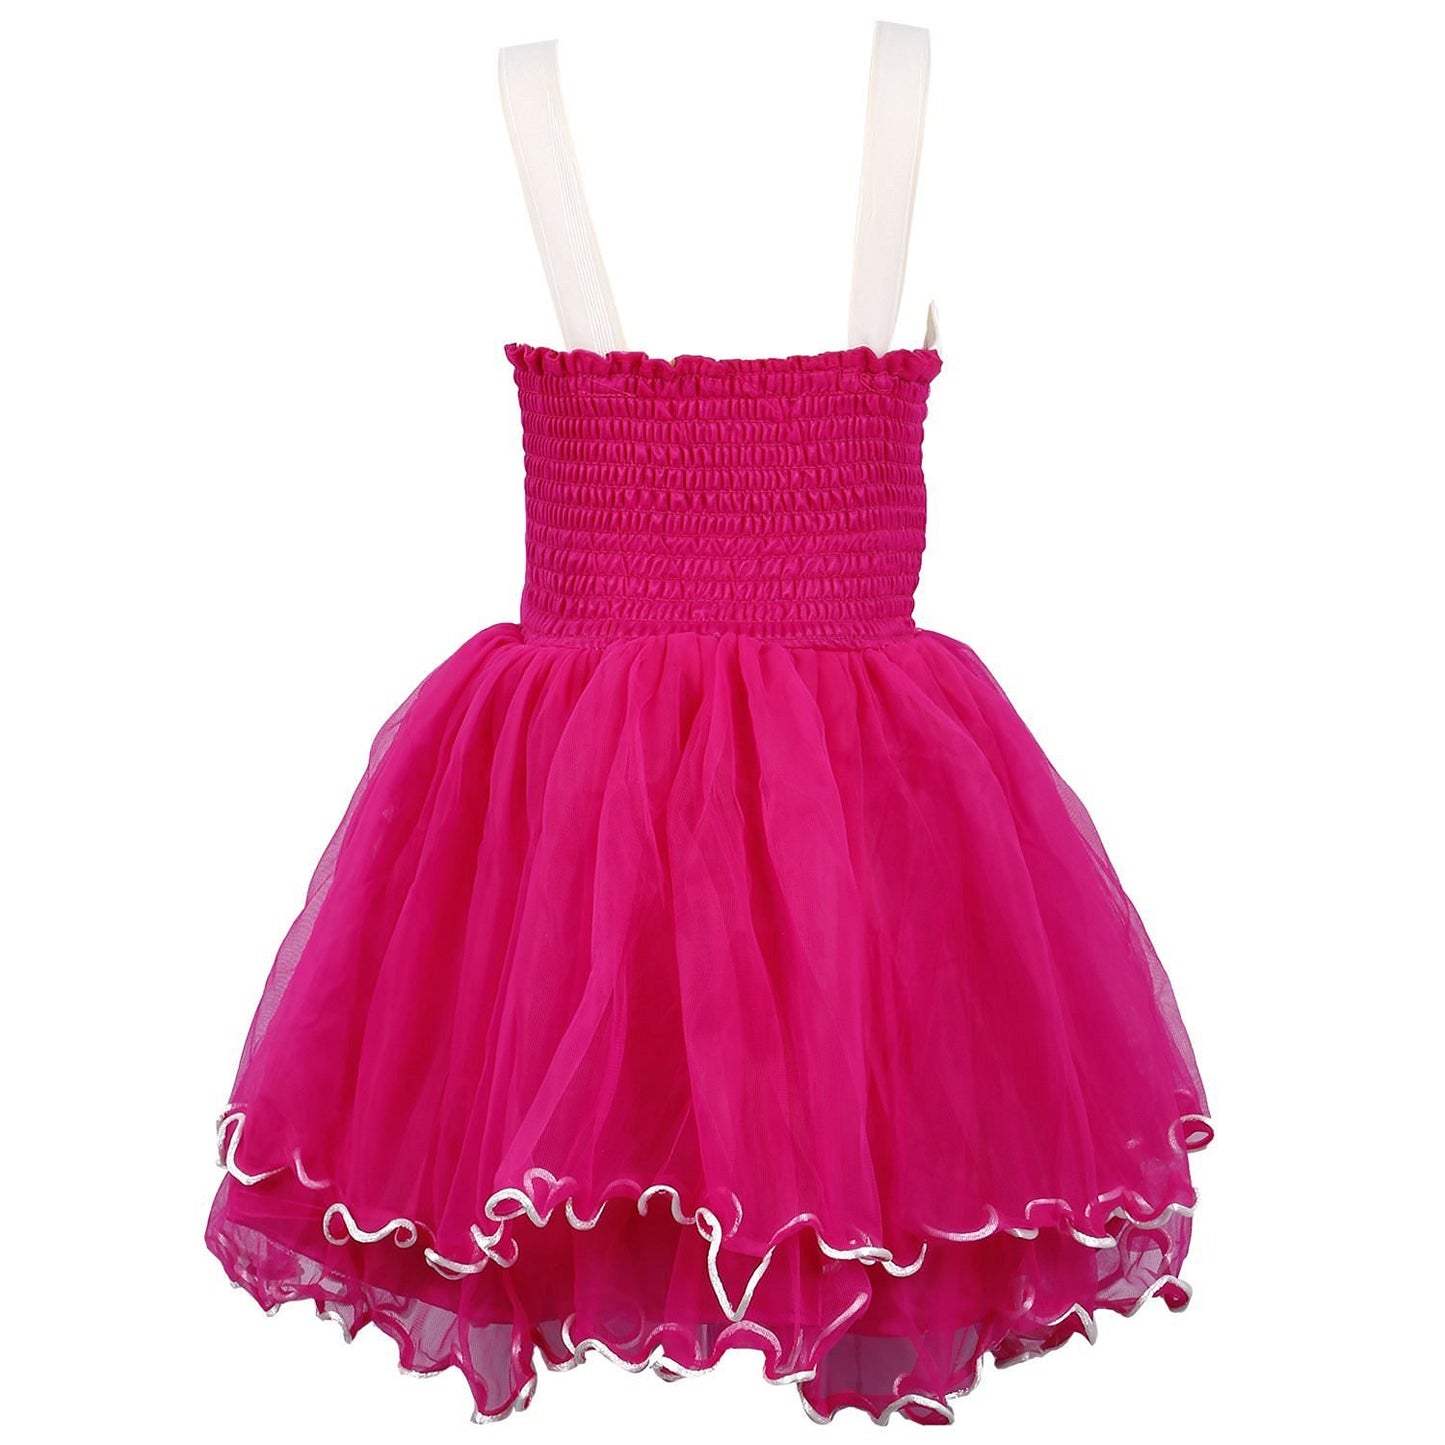 Wish Karo Baby Girls Partywear Dress Frocks For Girls (fr195pnk)